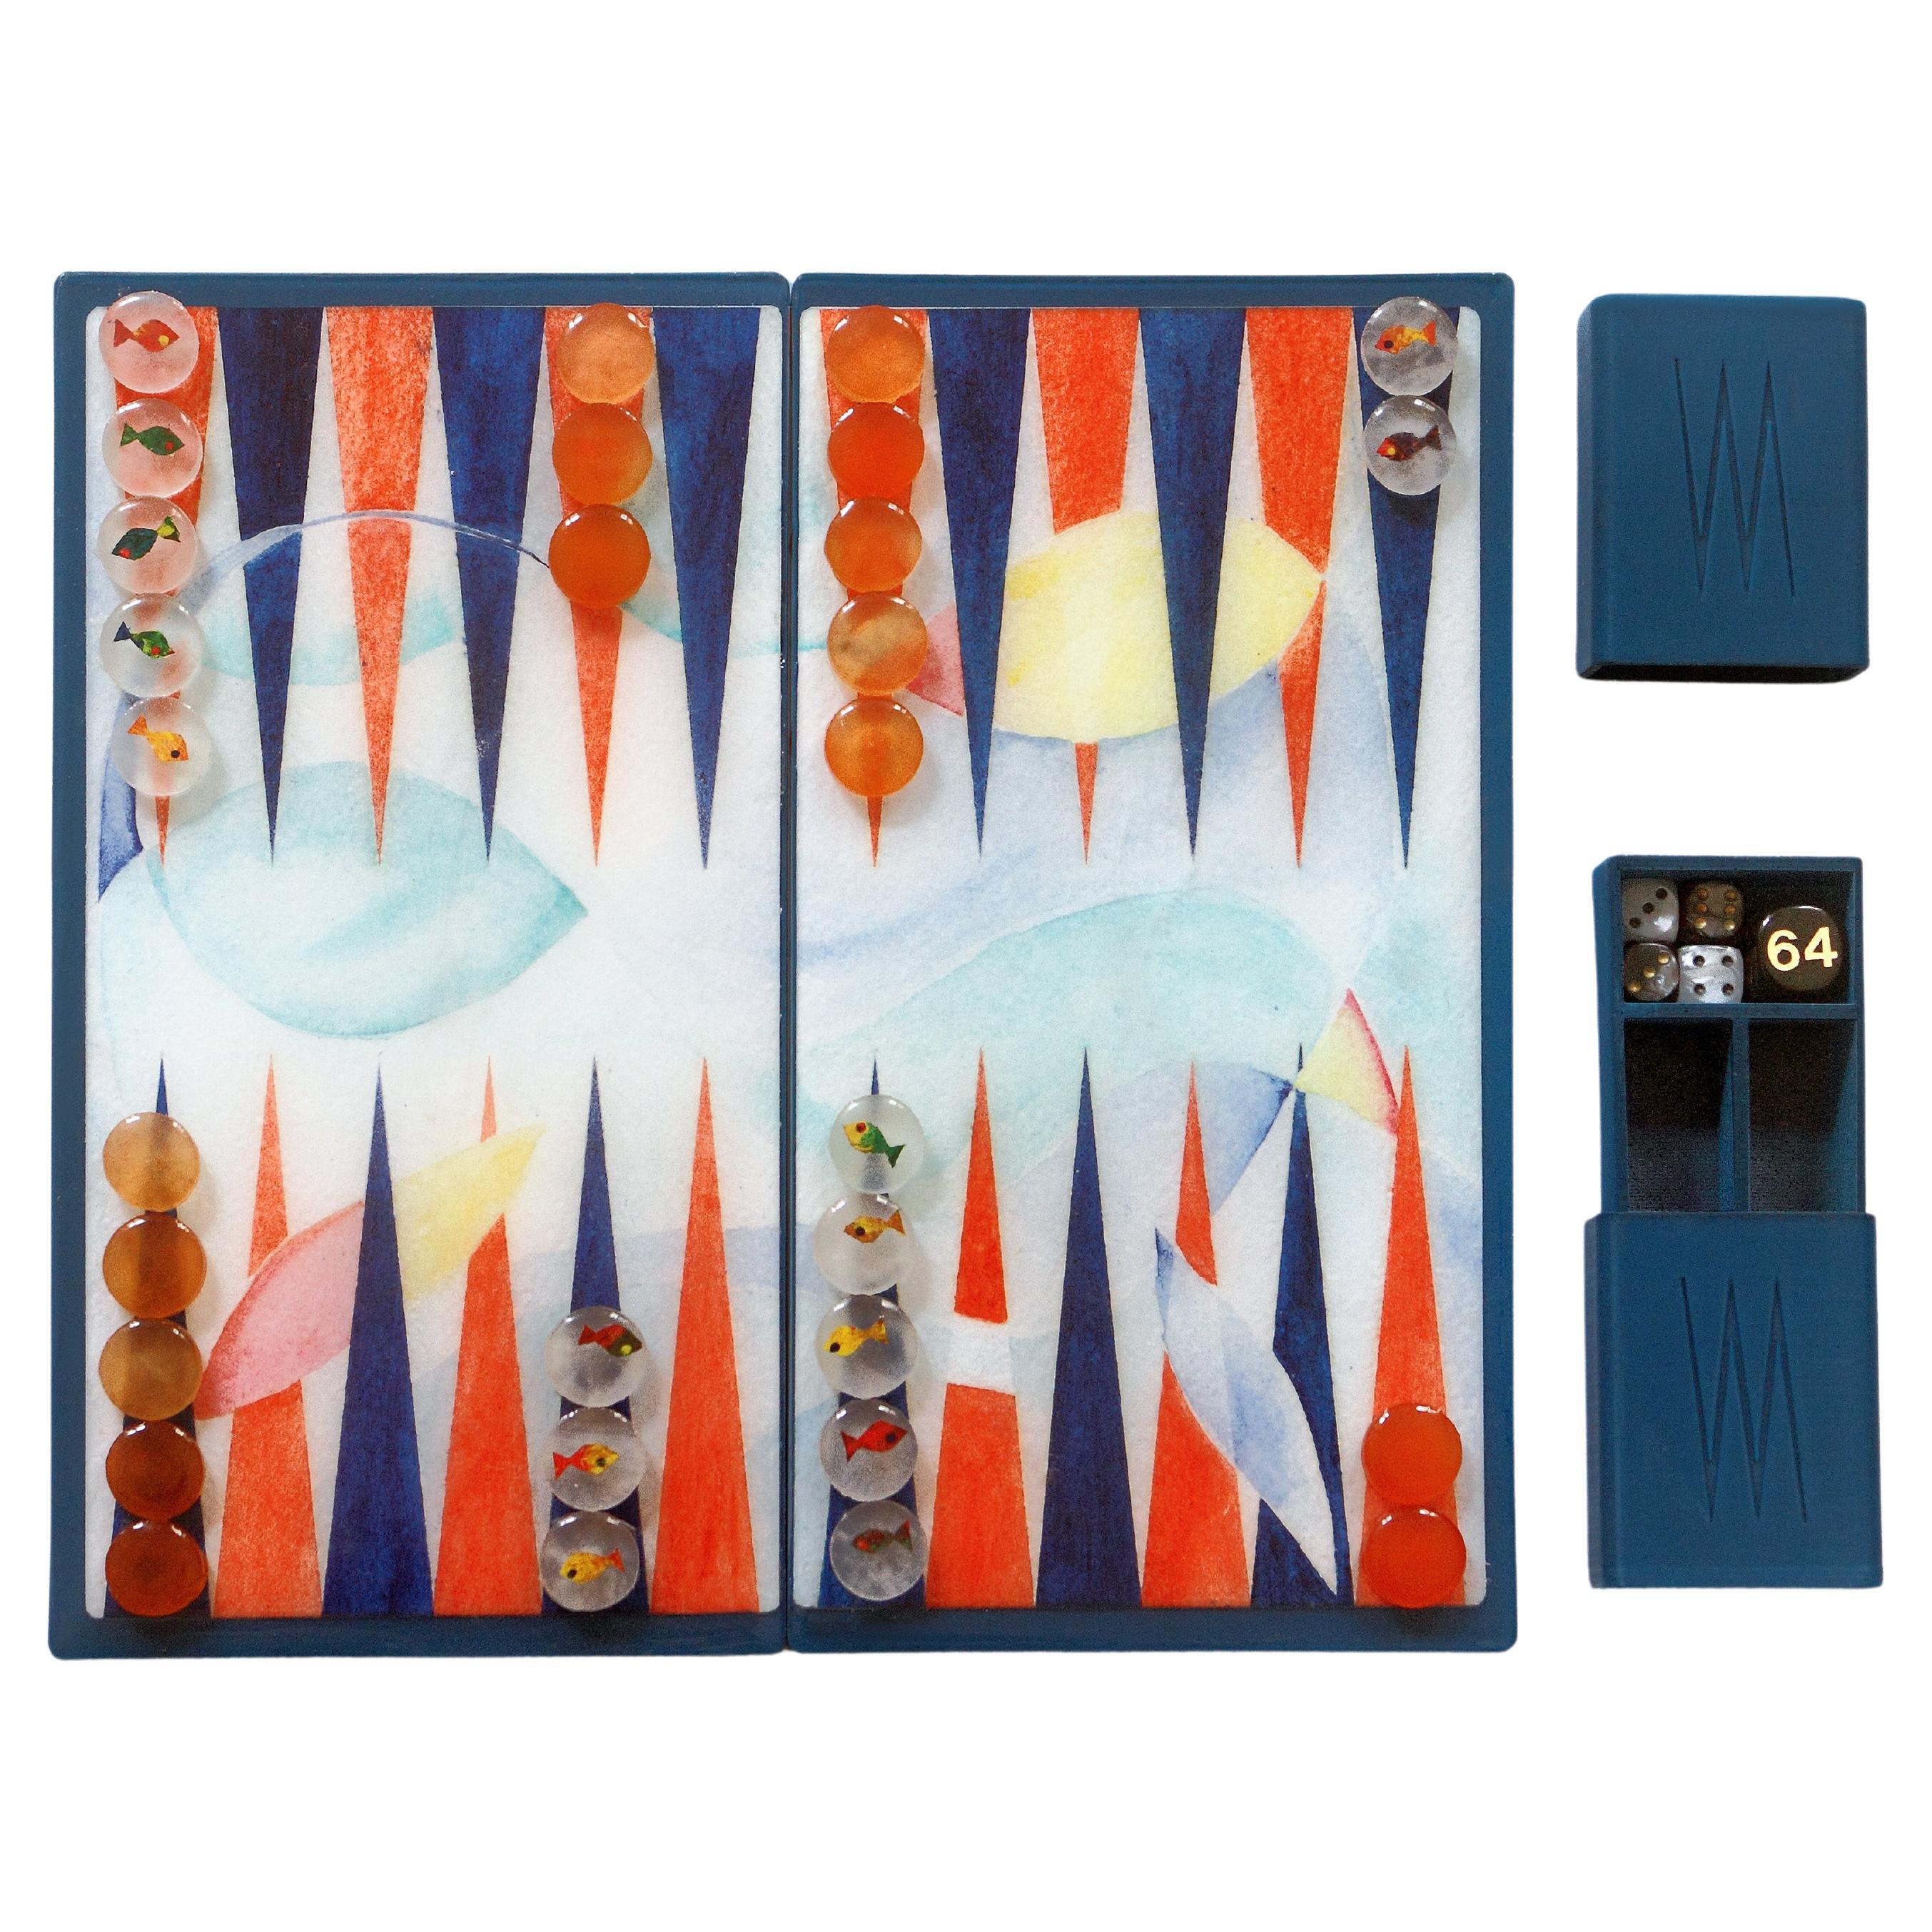 Handgefertigtes modernes Backgammon-Reisespiel aus Epoxidharz, handbemalt, limitierte Auflage